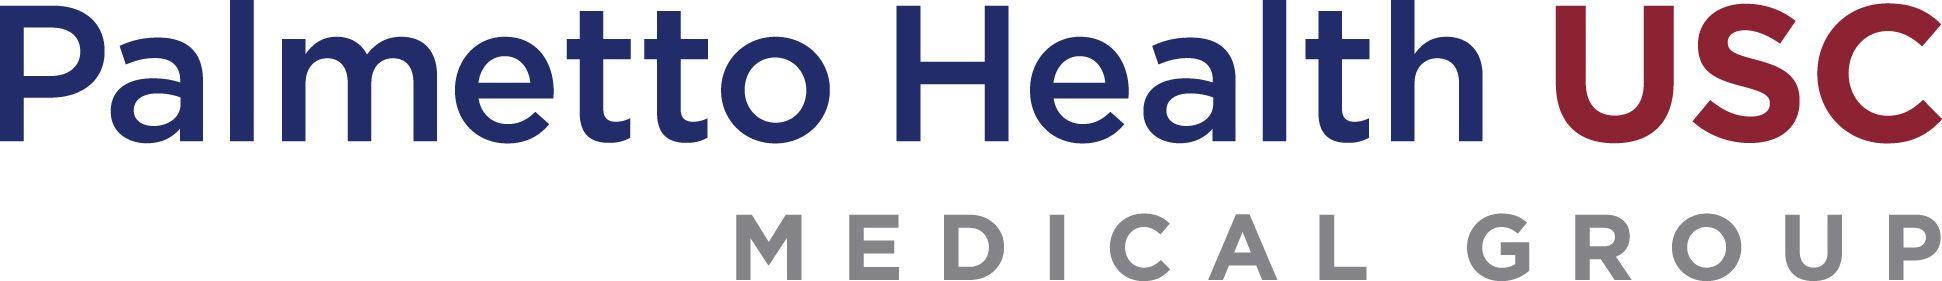 Palmetto Logo - Logos - Palmetto Health-USC Medical Group